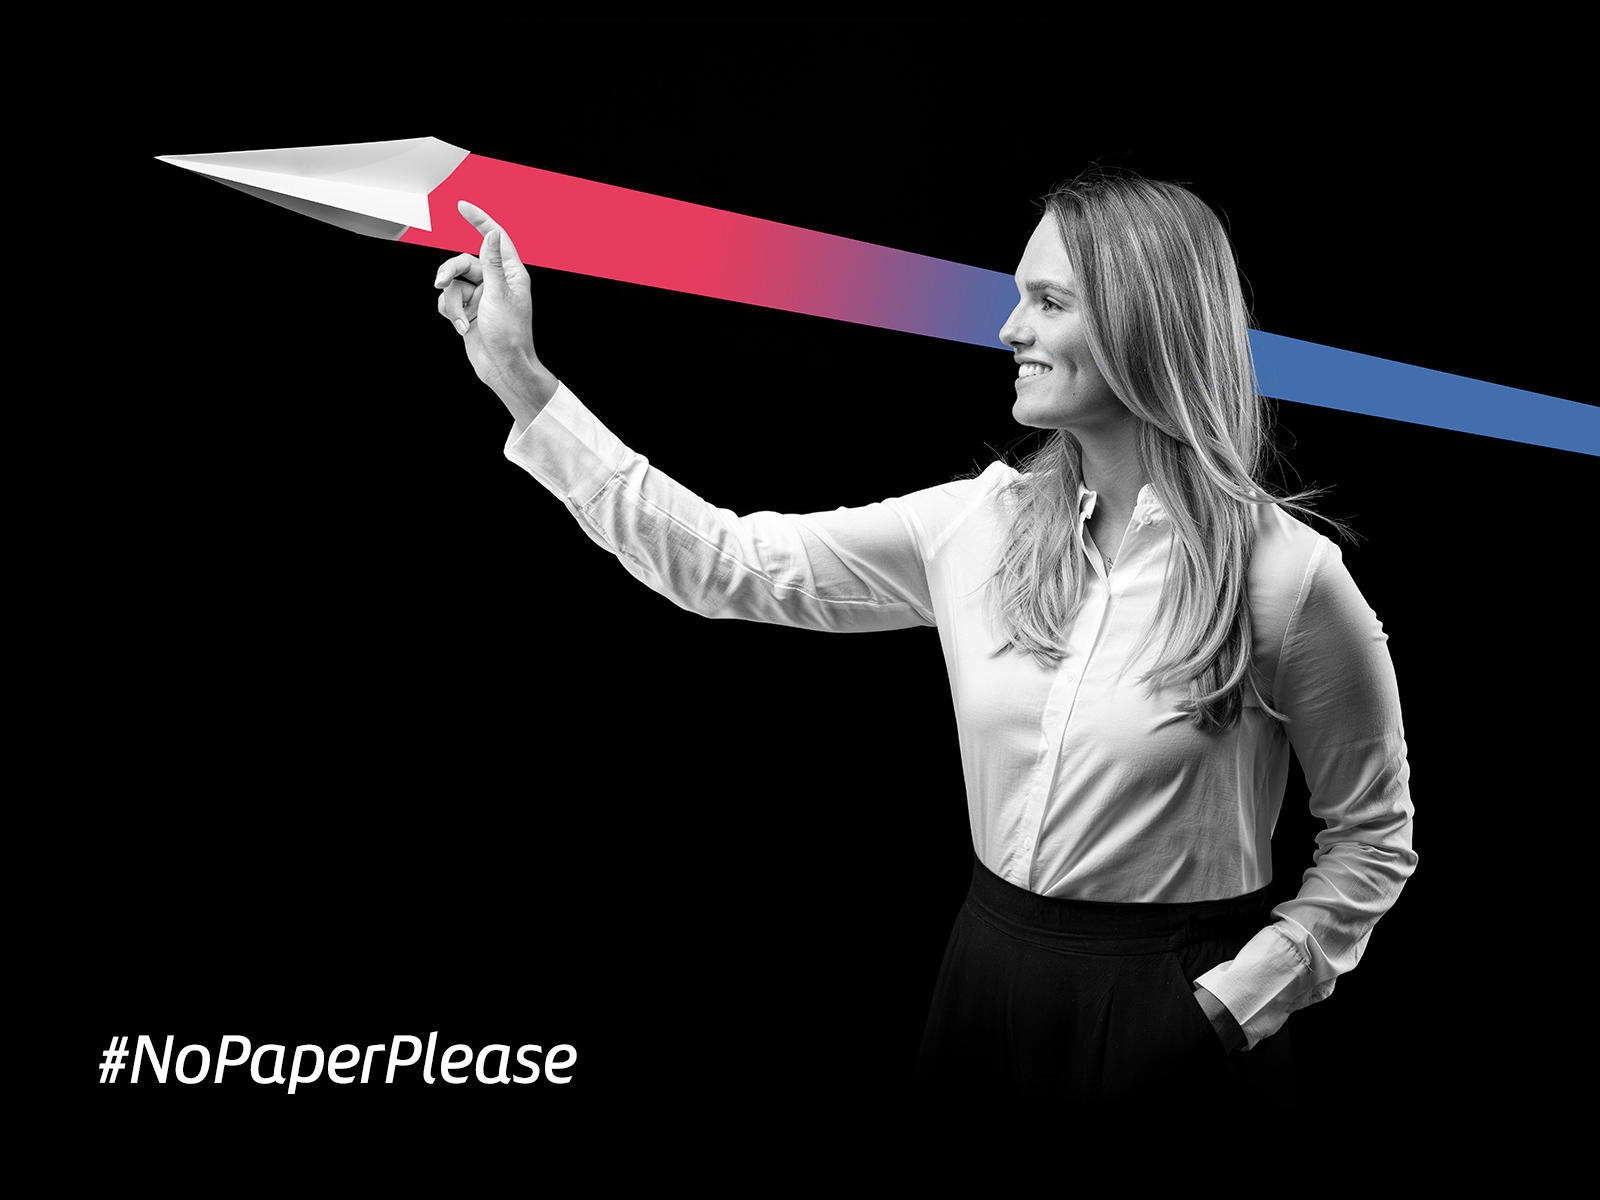 Bei den modern cloud rebels wird auf Papier verzichtet. Der Claim #nopaperplease steht für eine moderne und digitale Steuerkanzlei